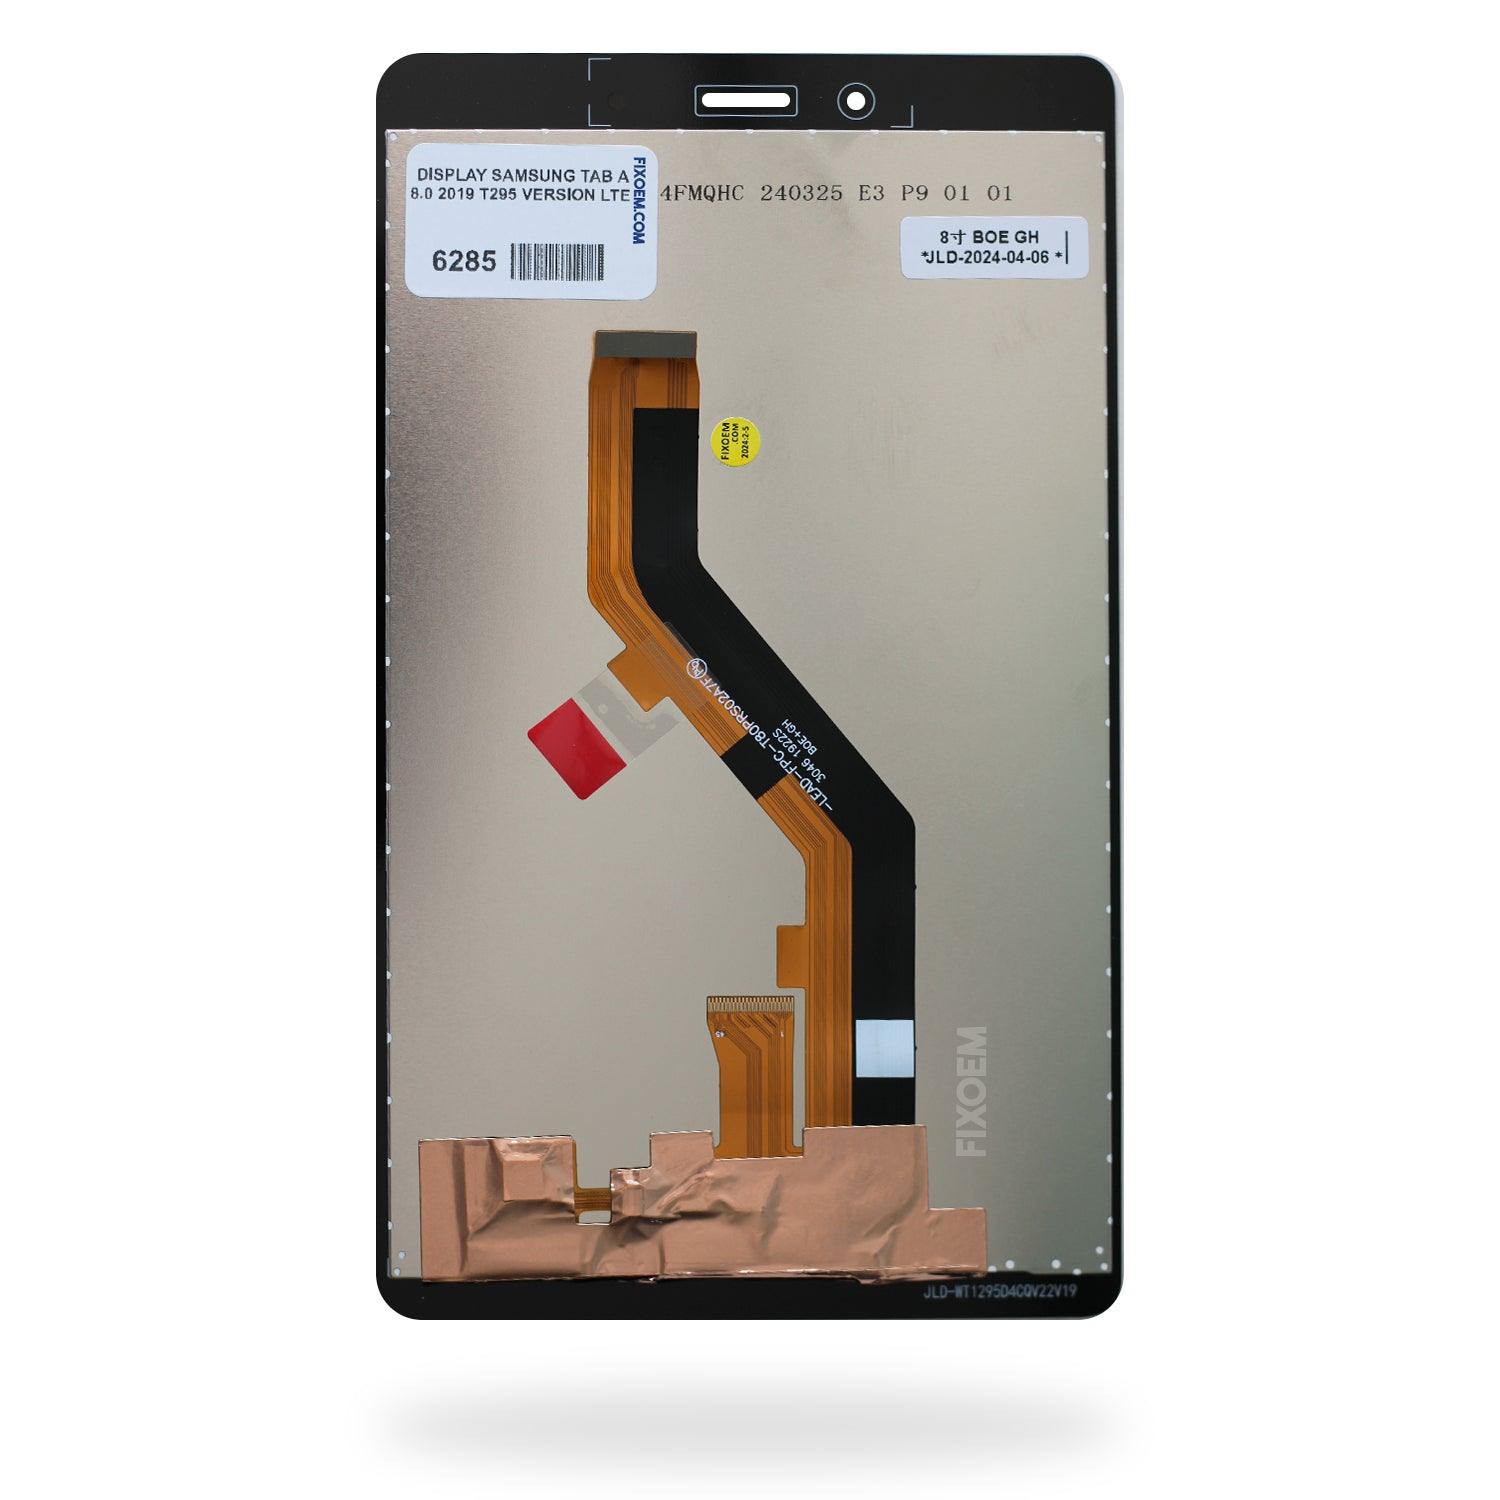 Display Samsung Tab A 8.0 2019 T295 Version Lte a solo $ 250.00 Refaccion y puestos celulares, refurbish y microelectronica.- FixOEM